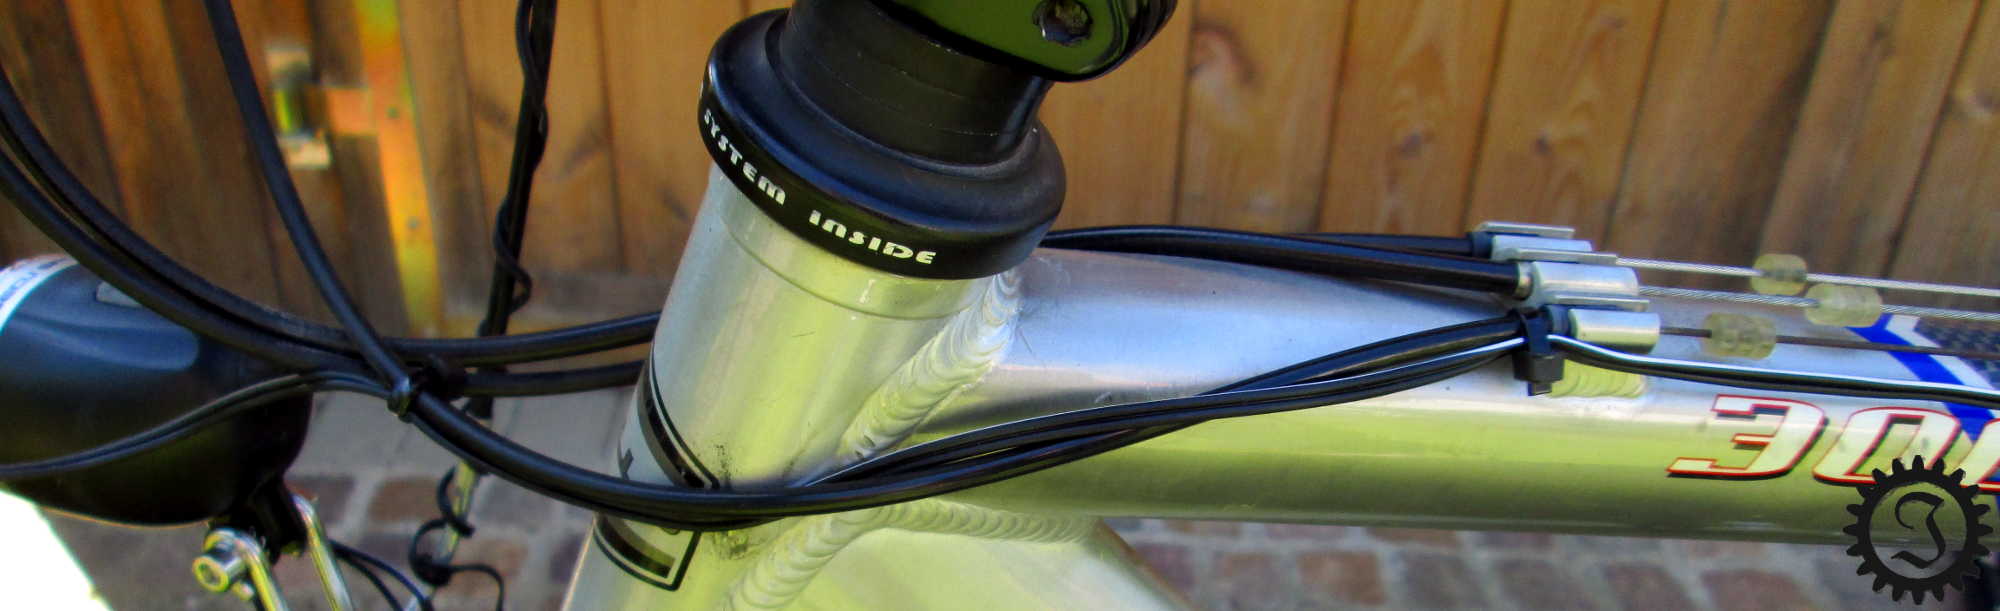 fahrrad licht kabel wieder in dynamo stecken